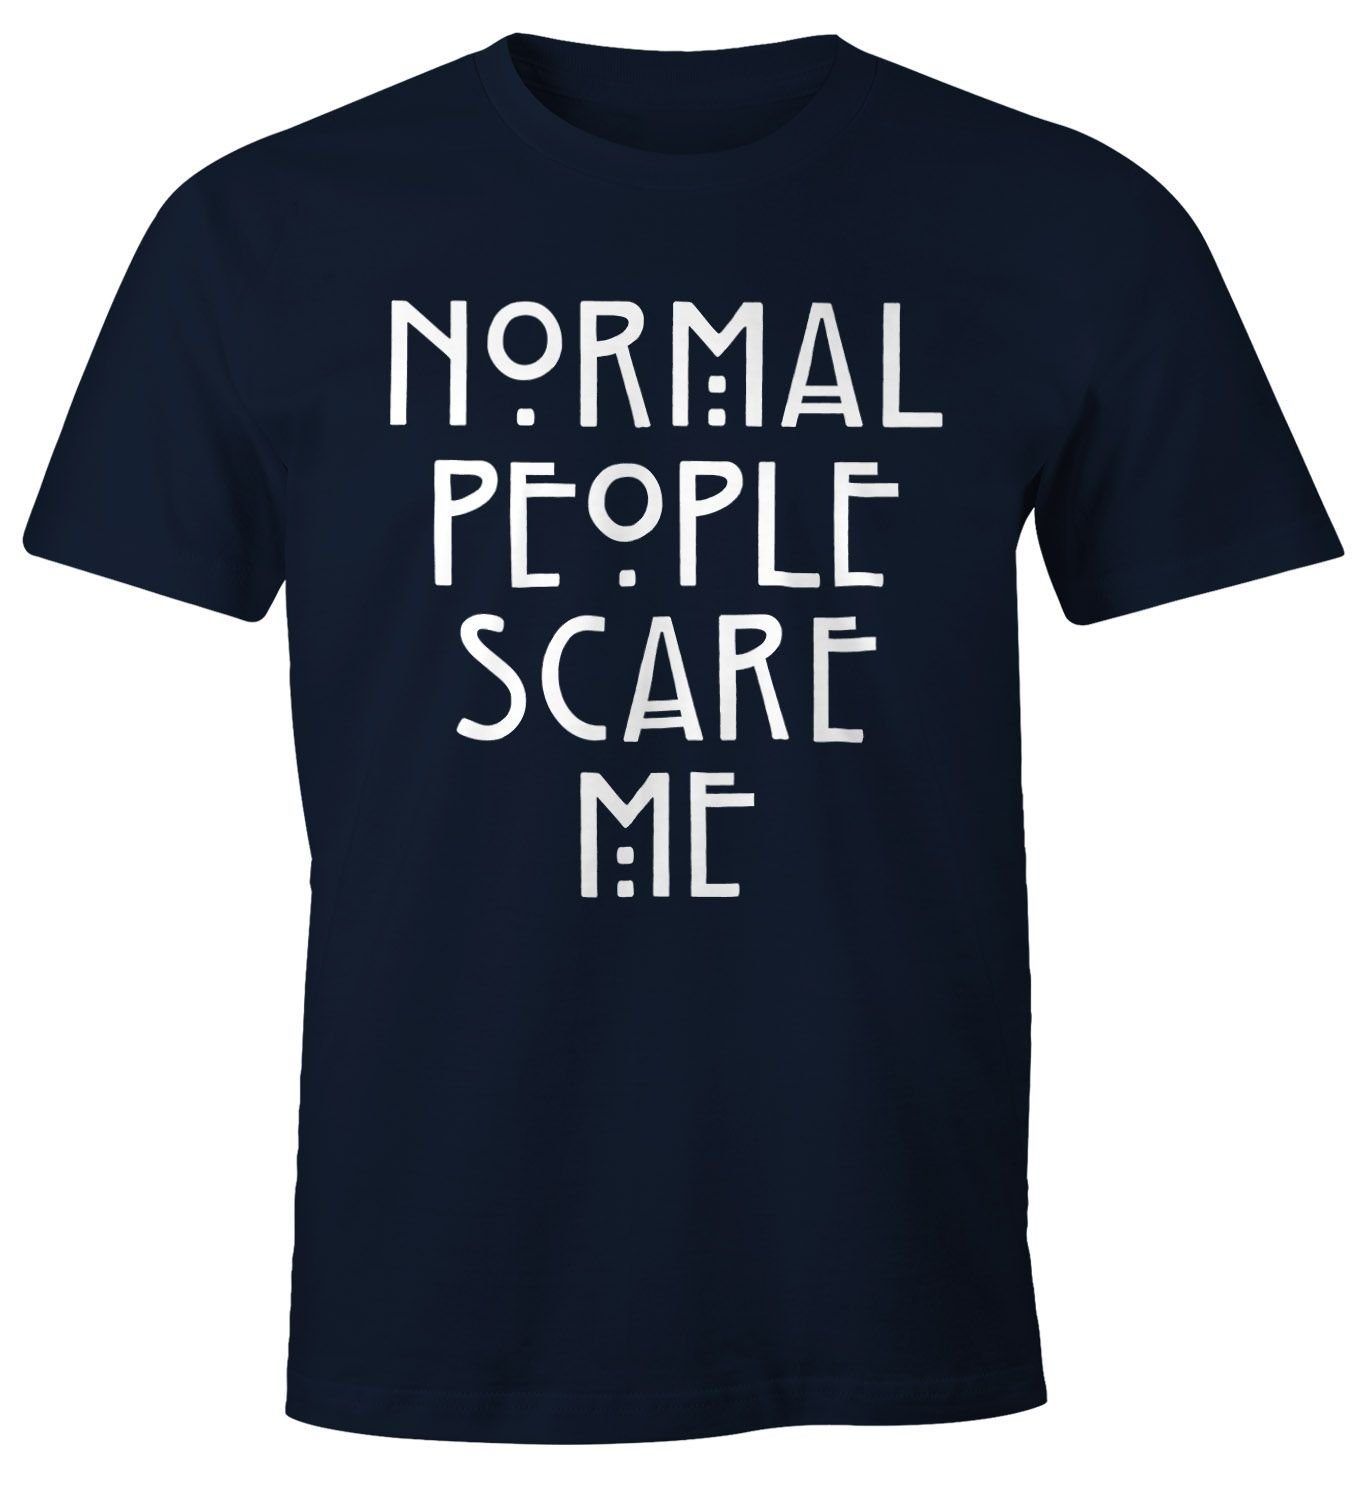 Moonworks® Scare mit Herren Fun-Shirt Normal People Me MoonWorks Print navy Print-Shirt T-Shirt